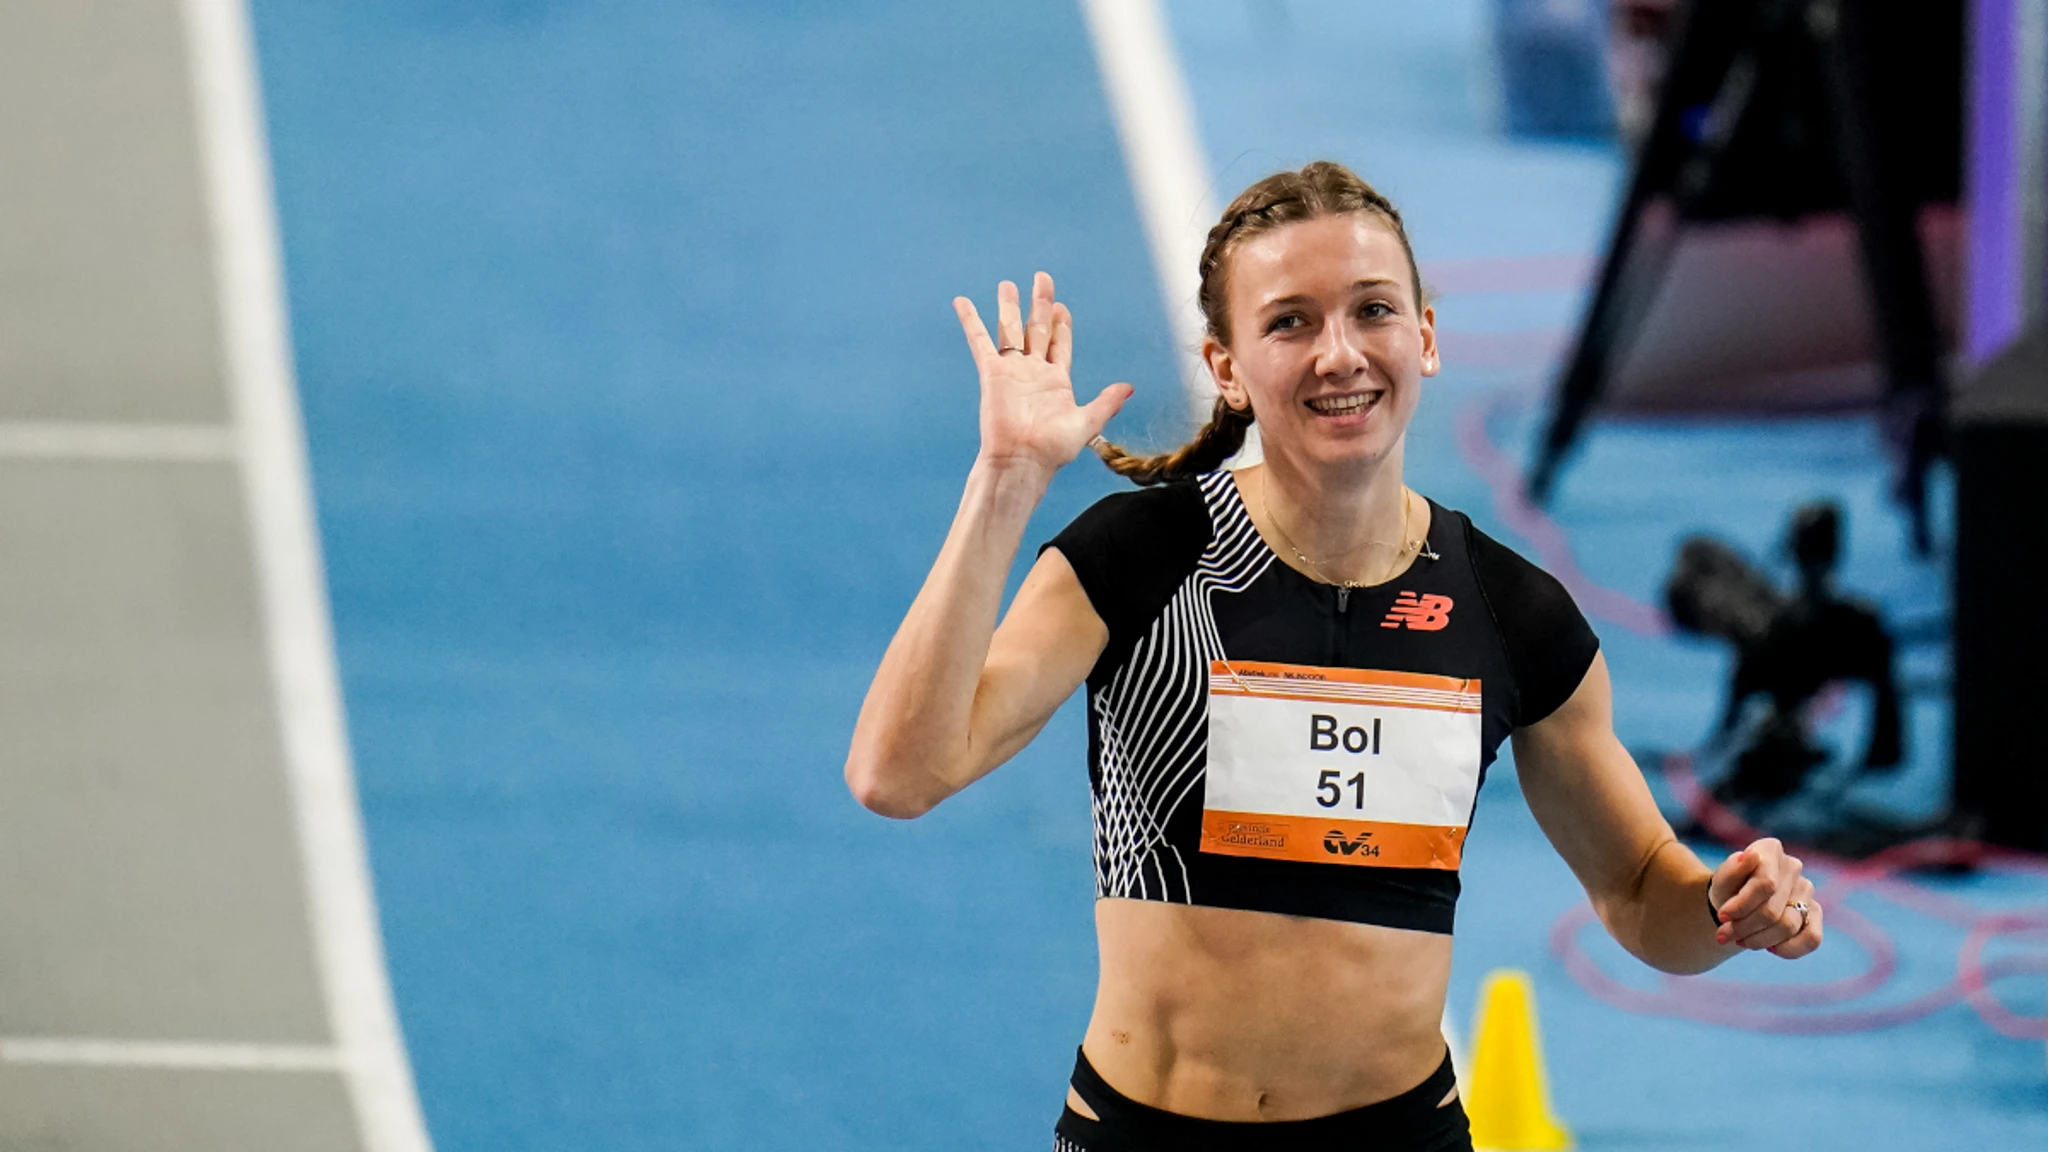 Dutch runner Femke Bol breaks own 400m indoor world record